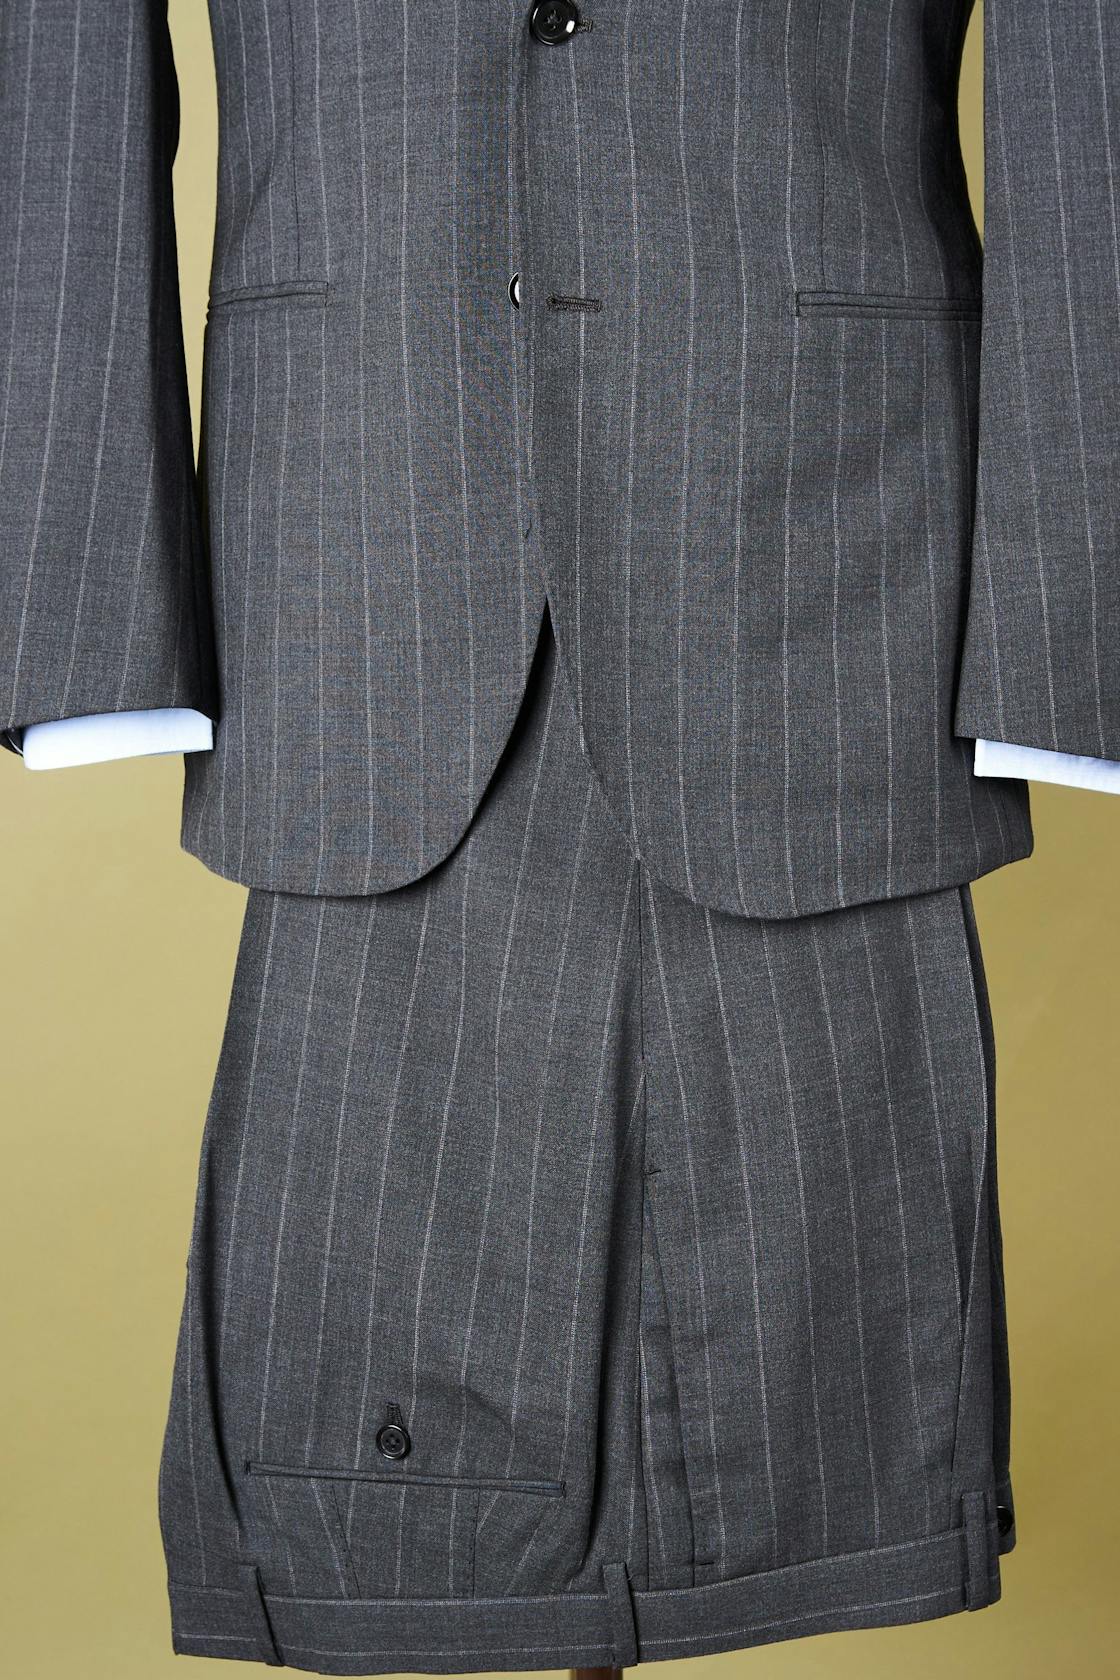 Ring Jacket Meister 253EH Grey High Twist Wool Stripe Suit